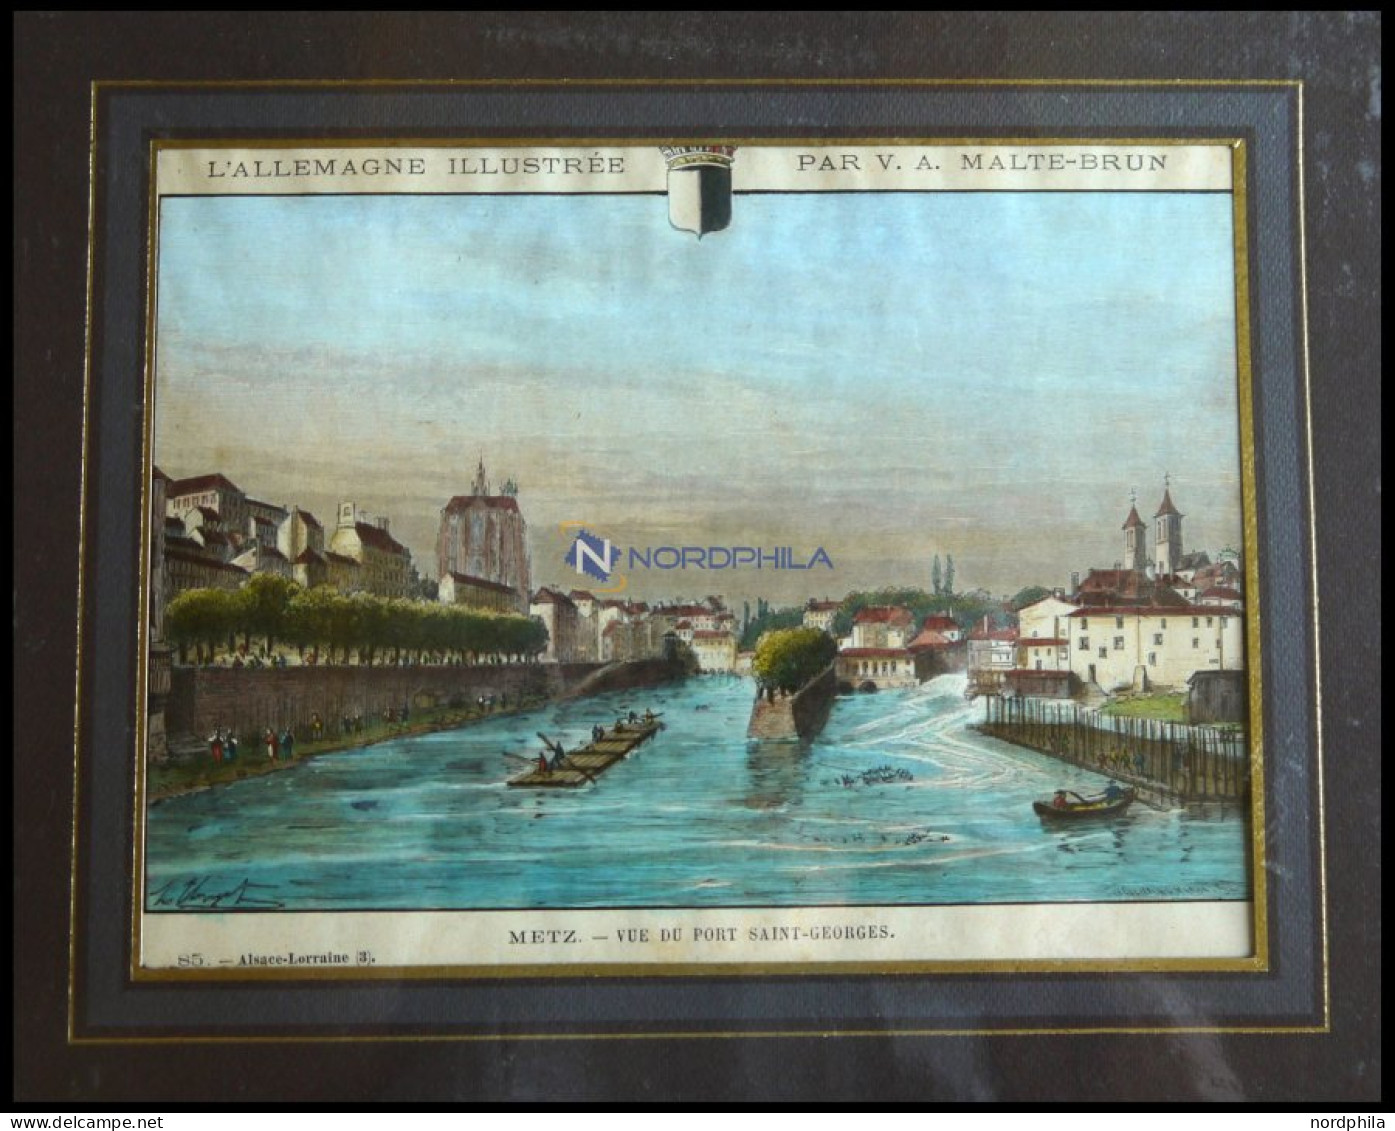 METZ, Gesamtansicht, Kolorierter Holzstich Aus Malte-Brun Um 1880 - Lithographien